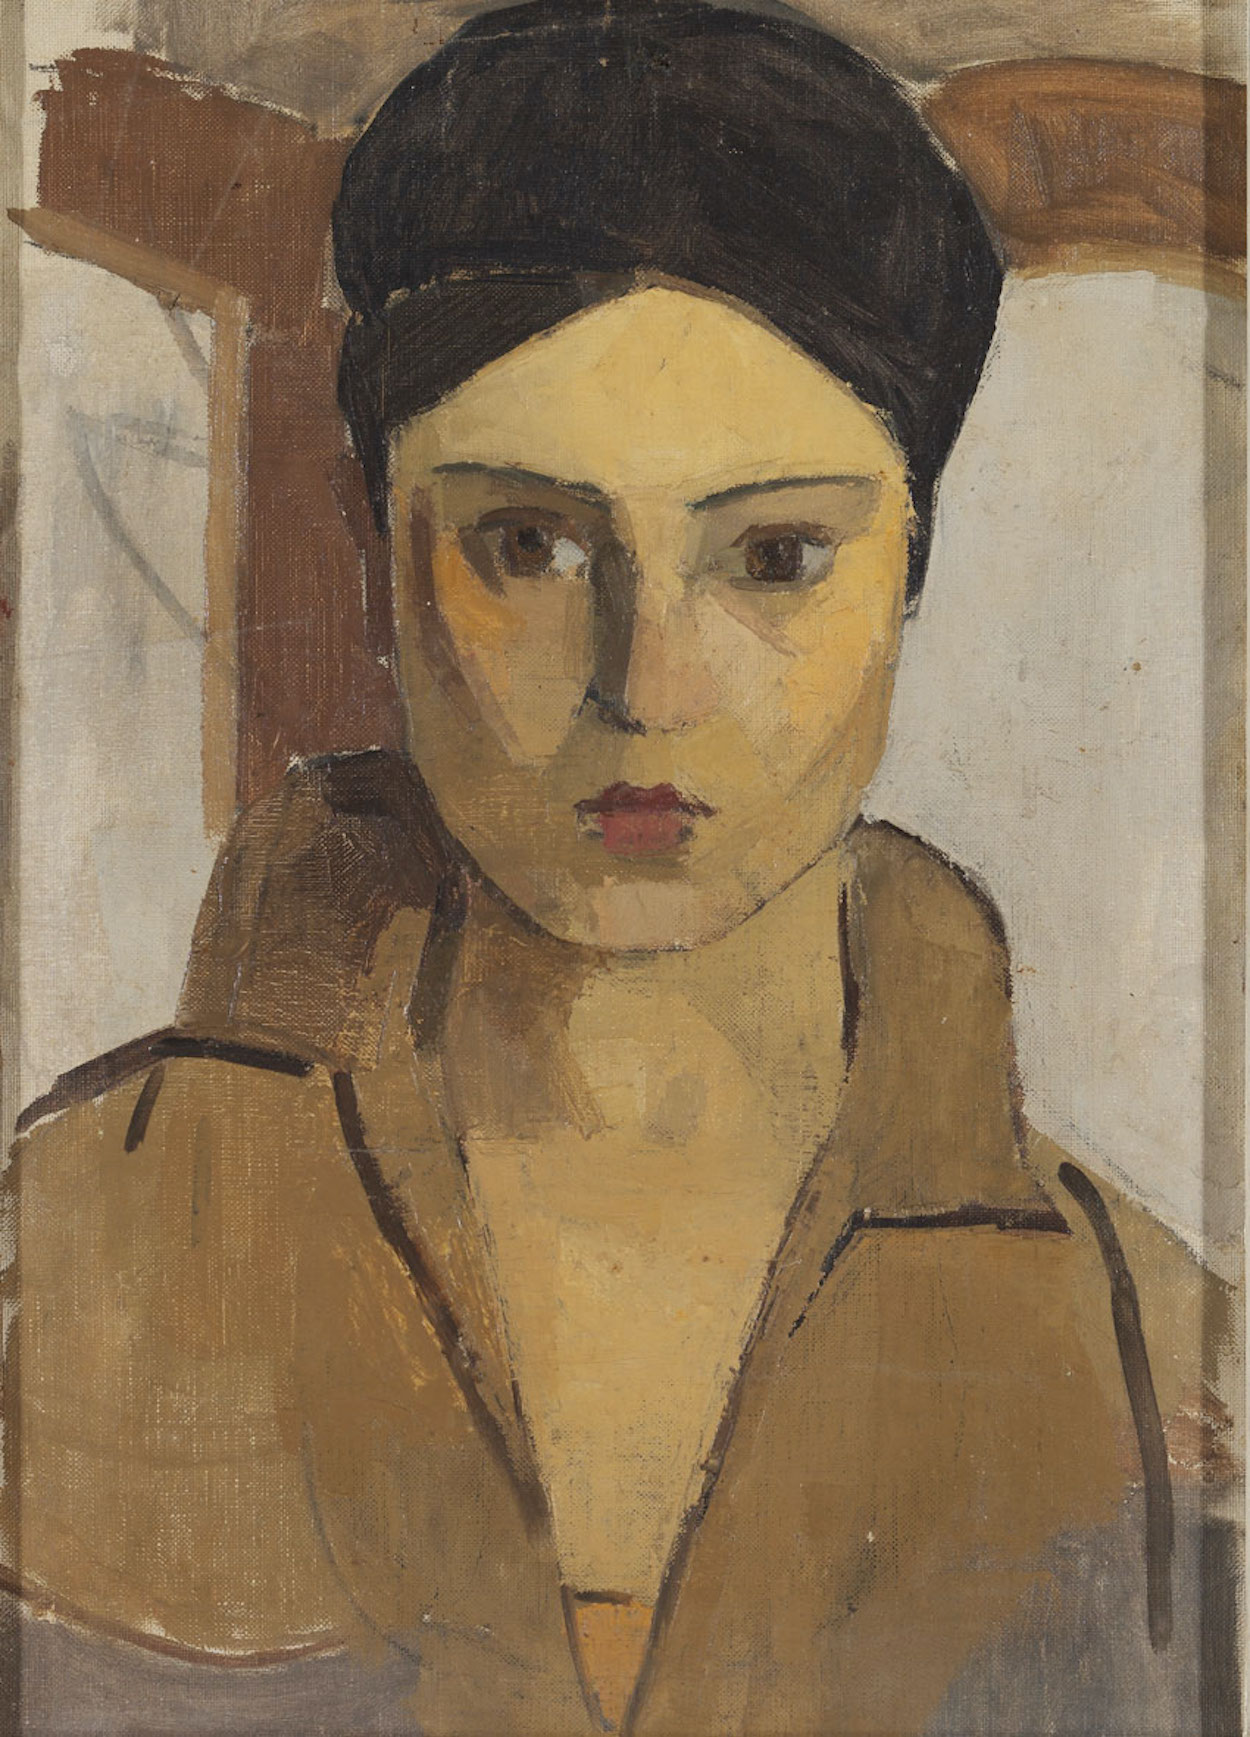 Autoritratto by Hale Asaf - Anni '20 del Novecento - 90 x 72 cm collezione privata